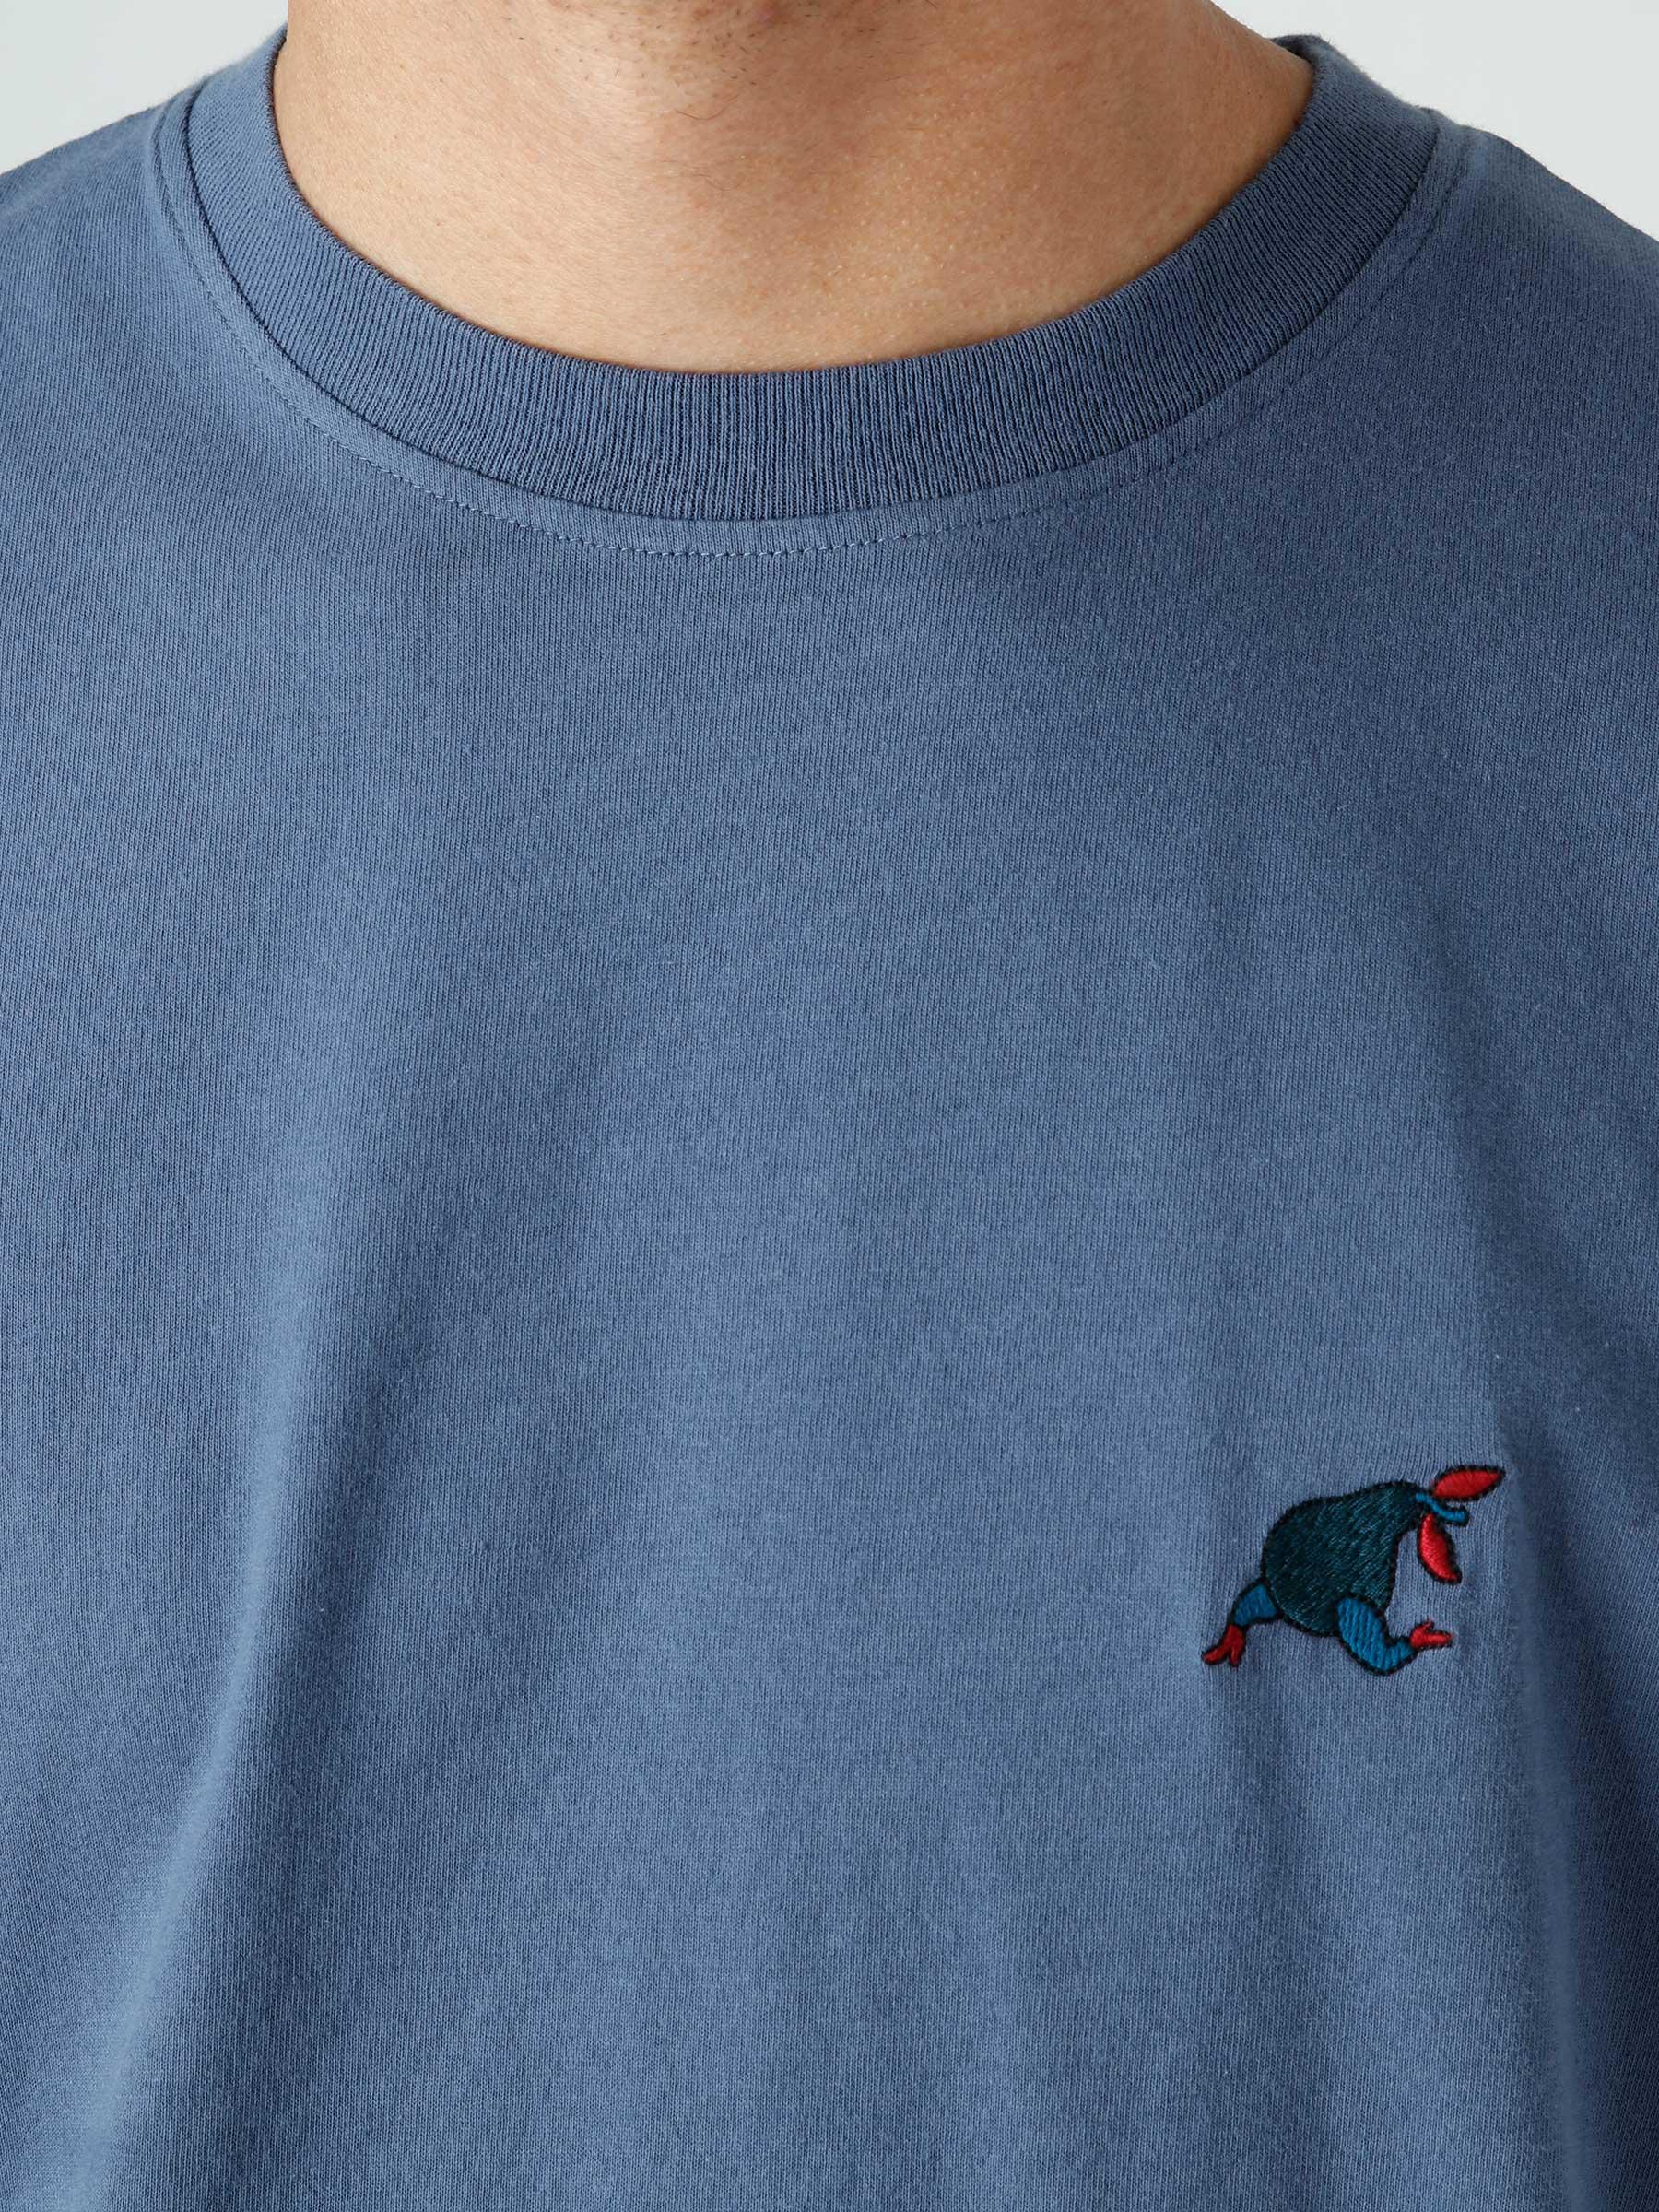 Blue Sitting Pear T-Shirt Indigo 47510